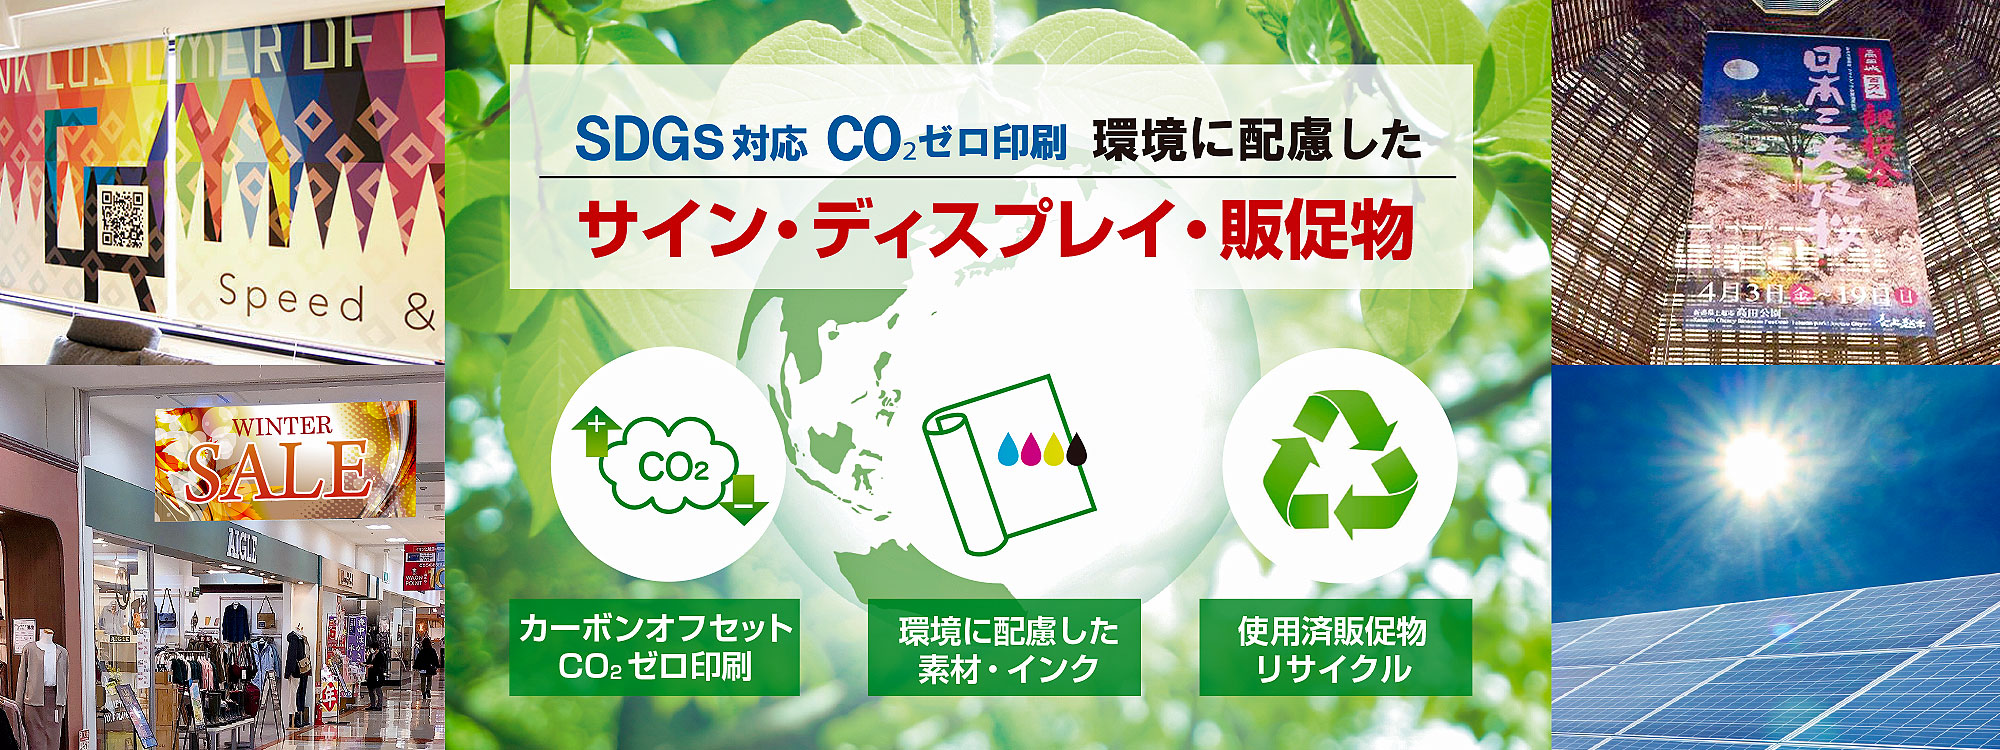 SDGS対応CO2ゼロ印刷 環境に配慮したサイン・ディスプレイ・販促物